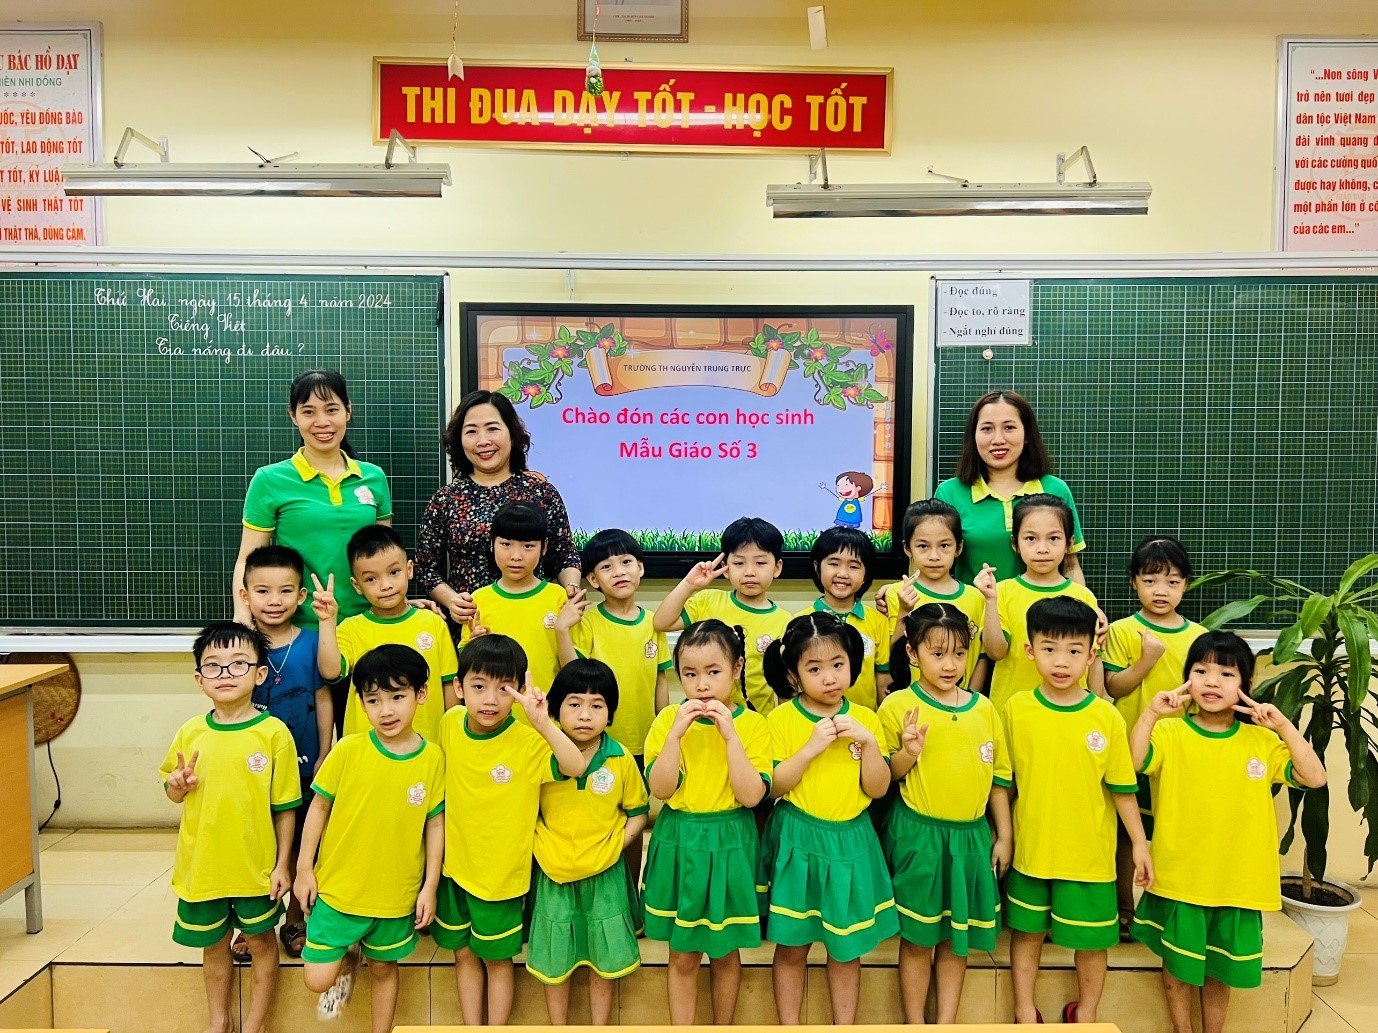 Hoạt động trải nghiệm tham quan trường Tiểu học Nguyễn Trung Trực của các bé lớp mẫu giáo lớn A1 – Trường Mẫu Giáo Số 3